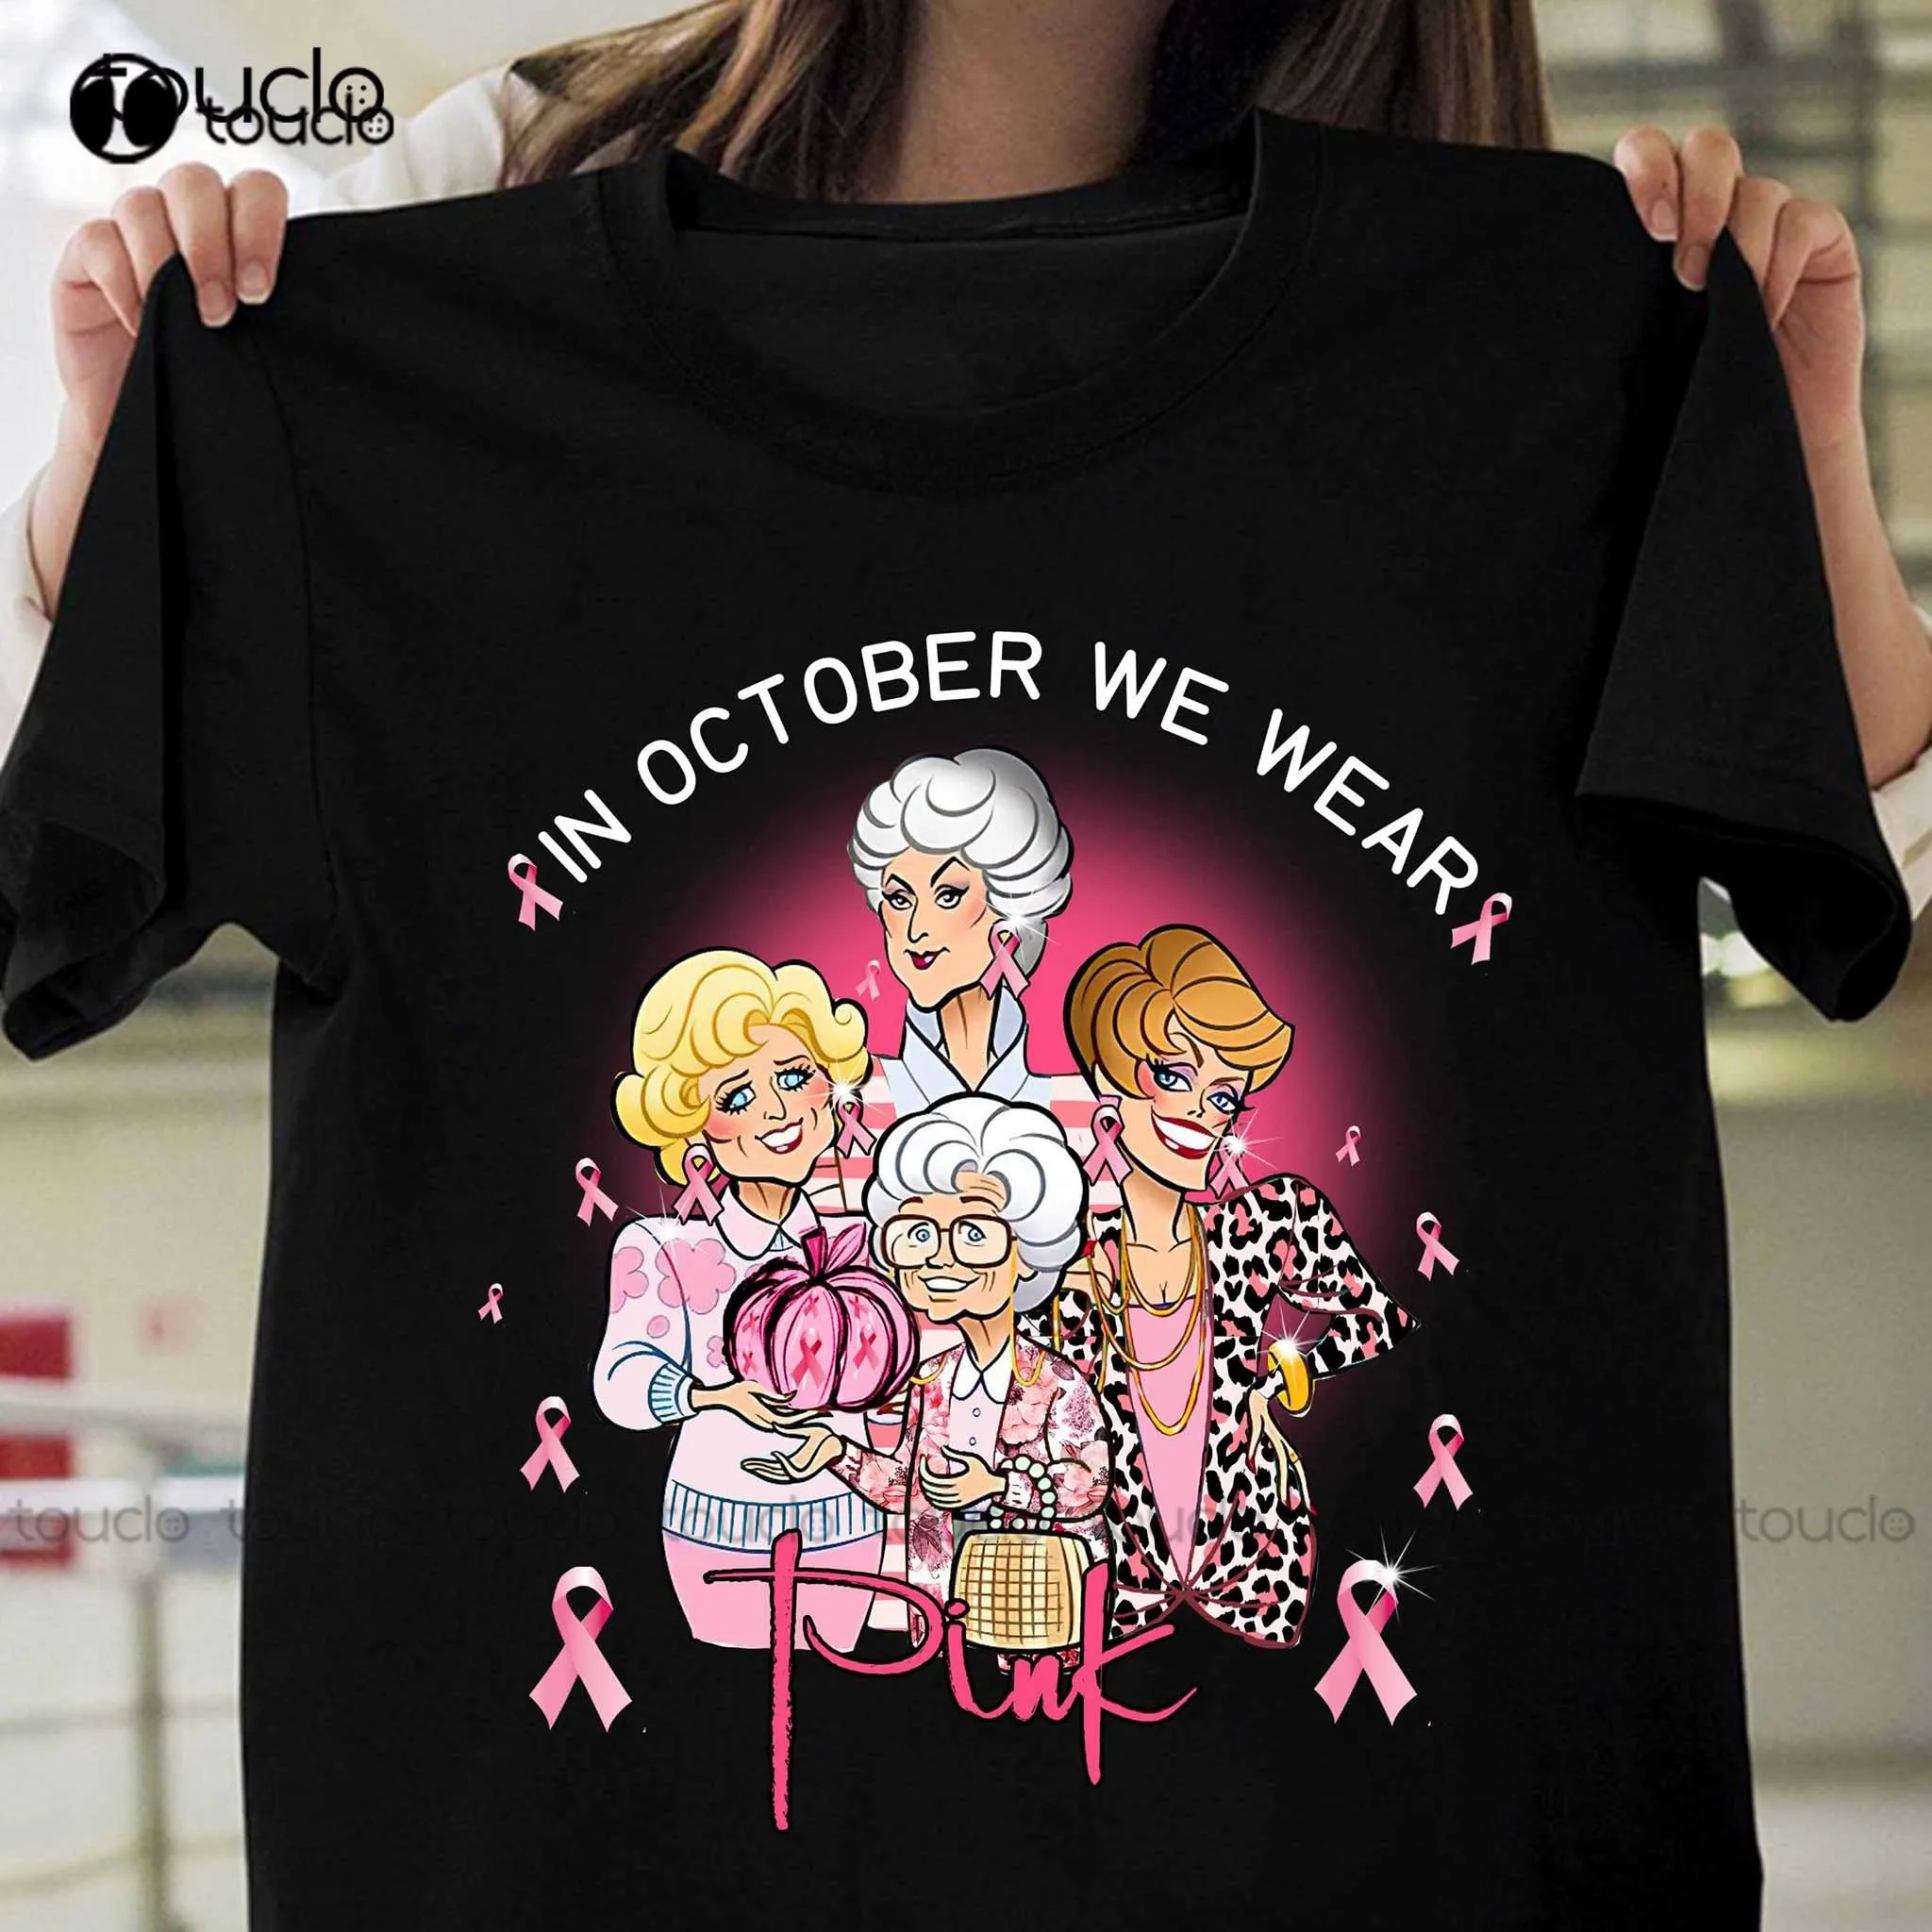 

Golden Girls In October We Wear Pink Pumpkin Breast Cancer Awareness Shirt Cute T Shirts Fashion Tshirt Summer New Popular